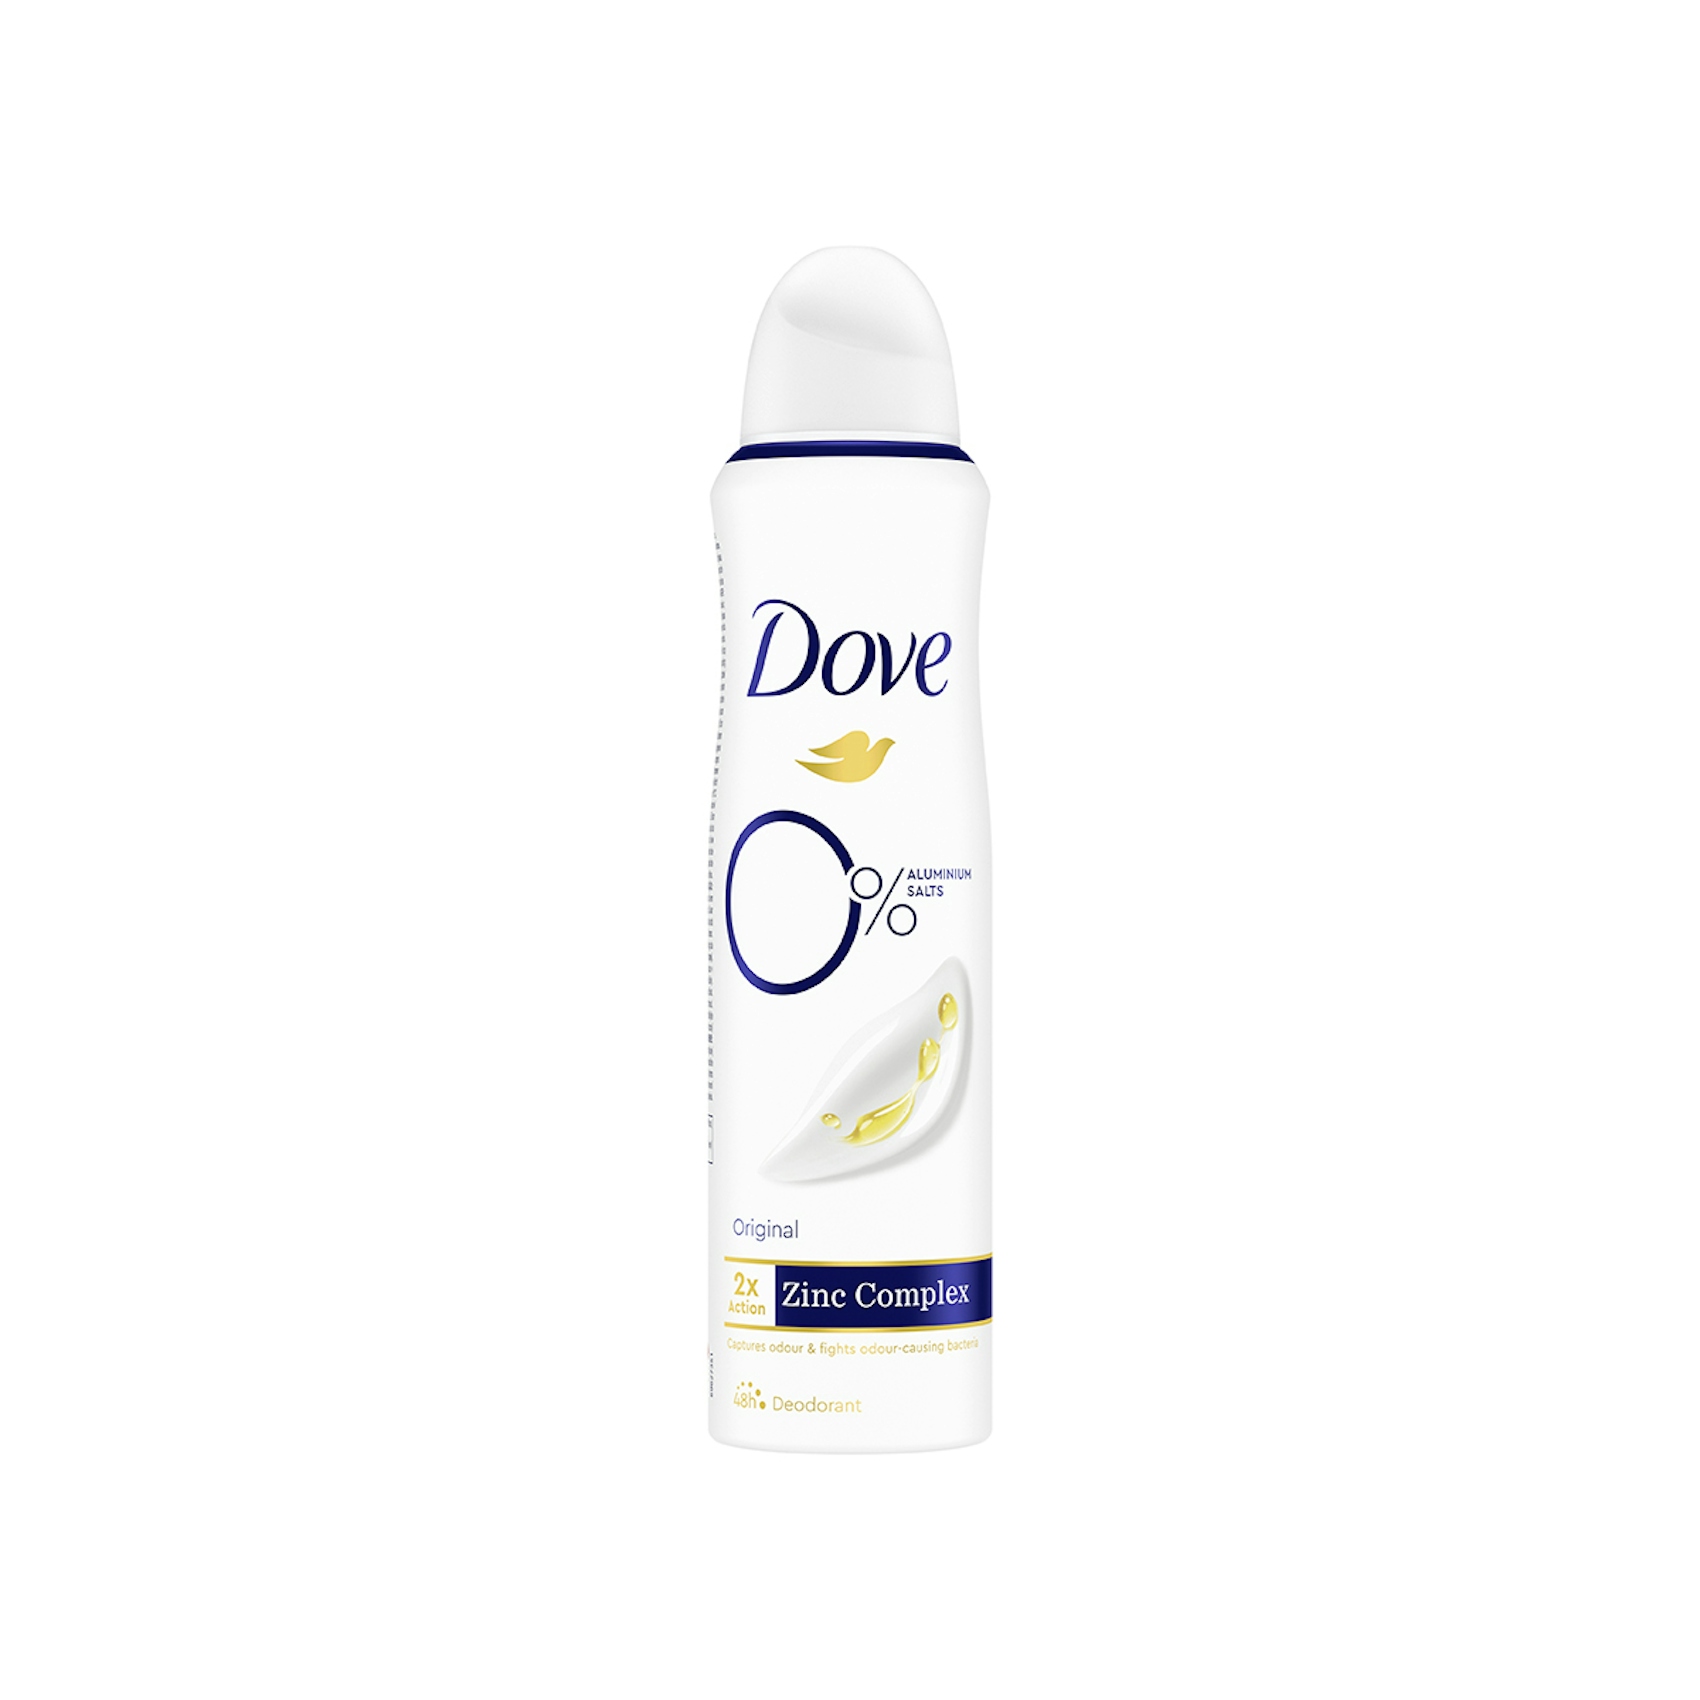 Desodorante Spray Original 0% Dove 150 Ml